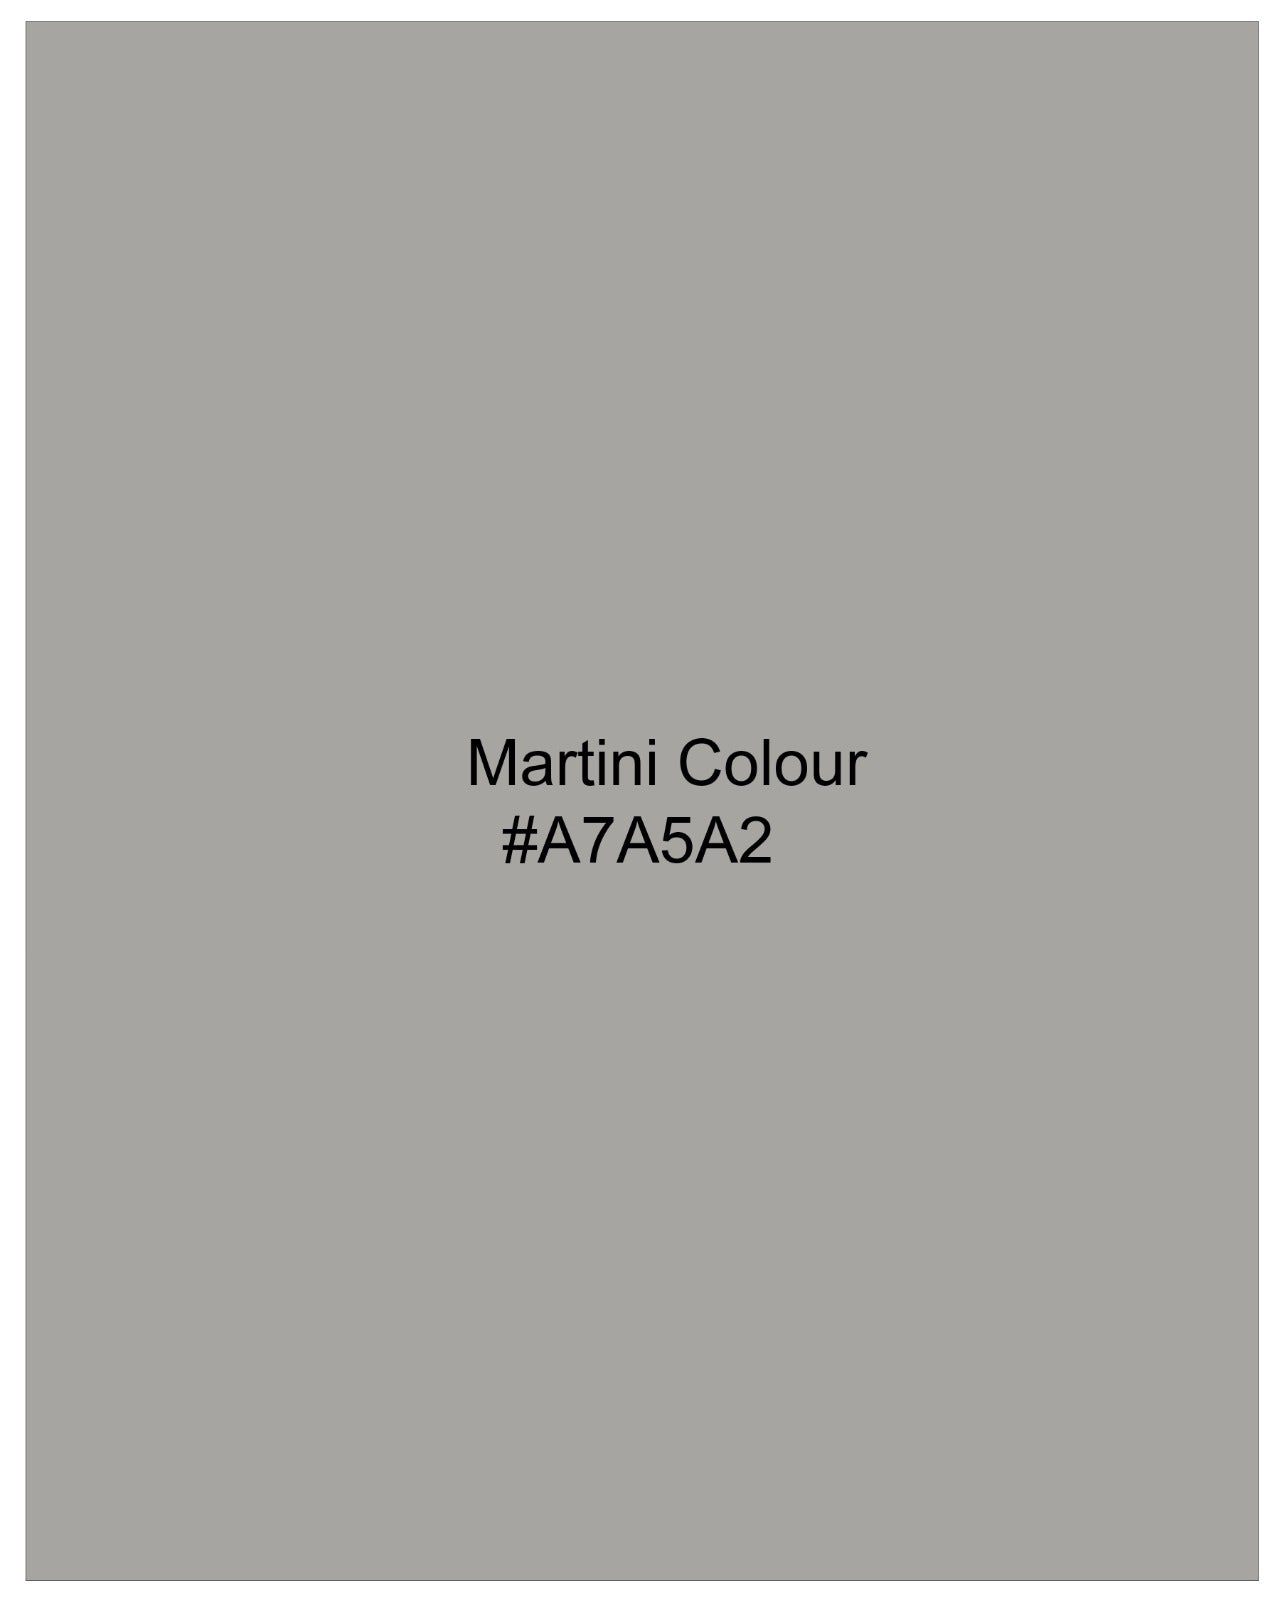 Martini Gray Stretchable Premium Cotton traveler Suit ST2667-SB-36,ST2667-SB-38,ST2667-SB-40,ST2667-SB-42,ST2667-SB-44,ST2667-SB-46,ST2667-SB-48,ST2667-SB-50,ST2667-SB-52,ST2667-SB-54,ST2667-SB-56,ST2667-SB-58,ST2667-SB-60